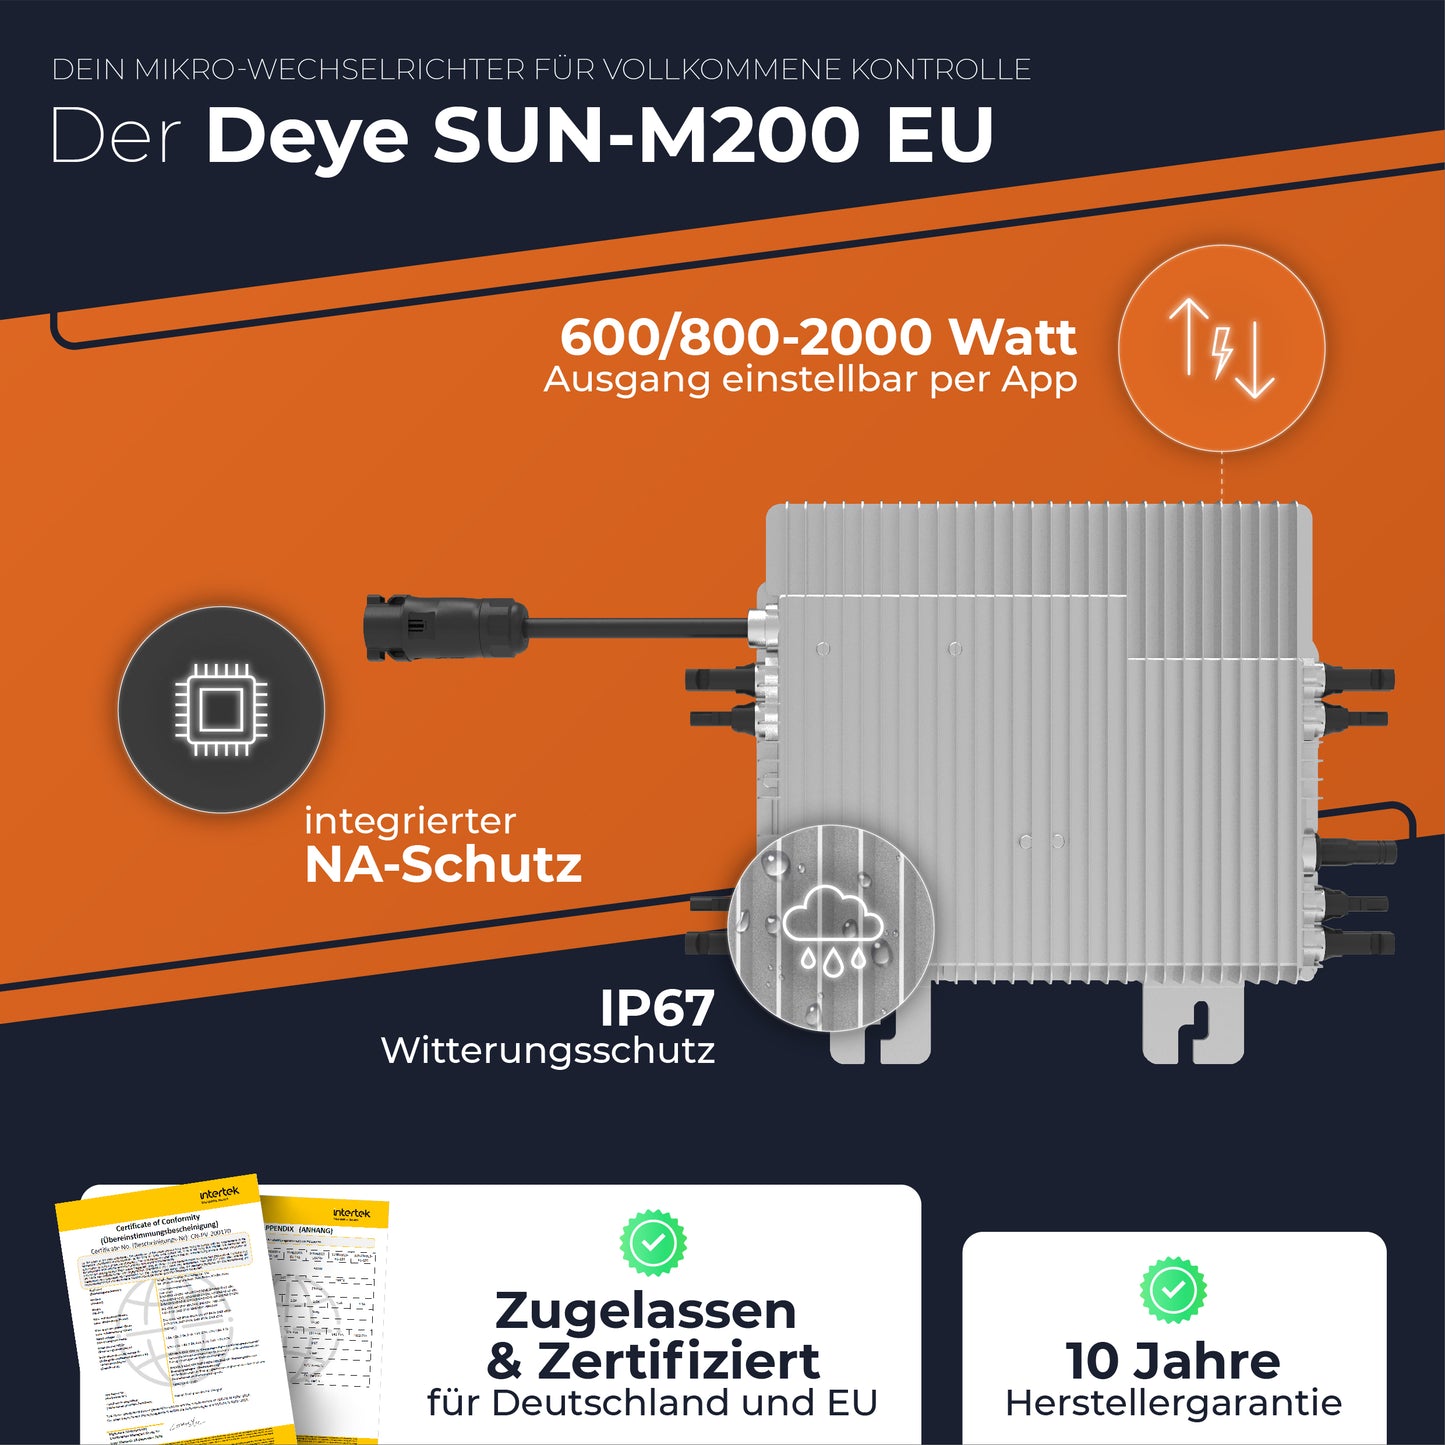 2000W Photovoltaik Solarboiler-Set inkl. 500W Solarmodule